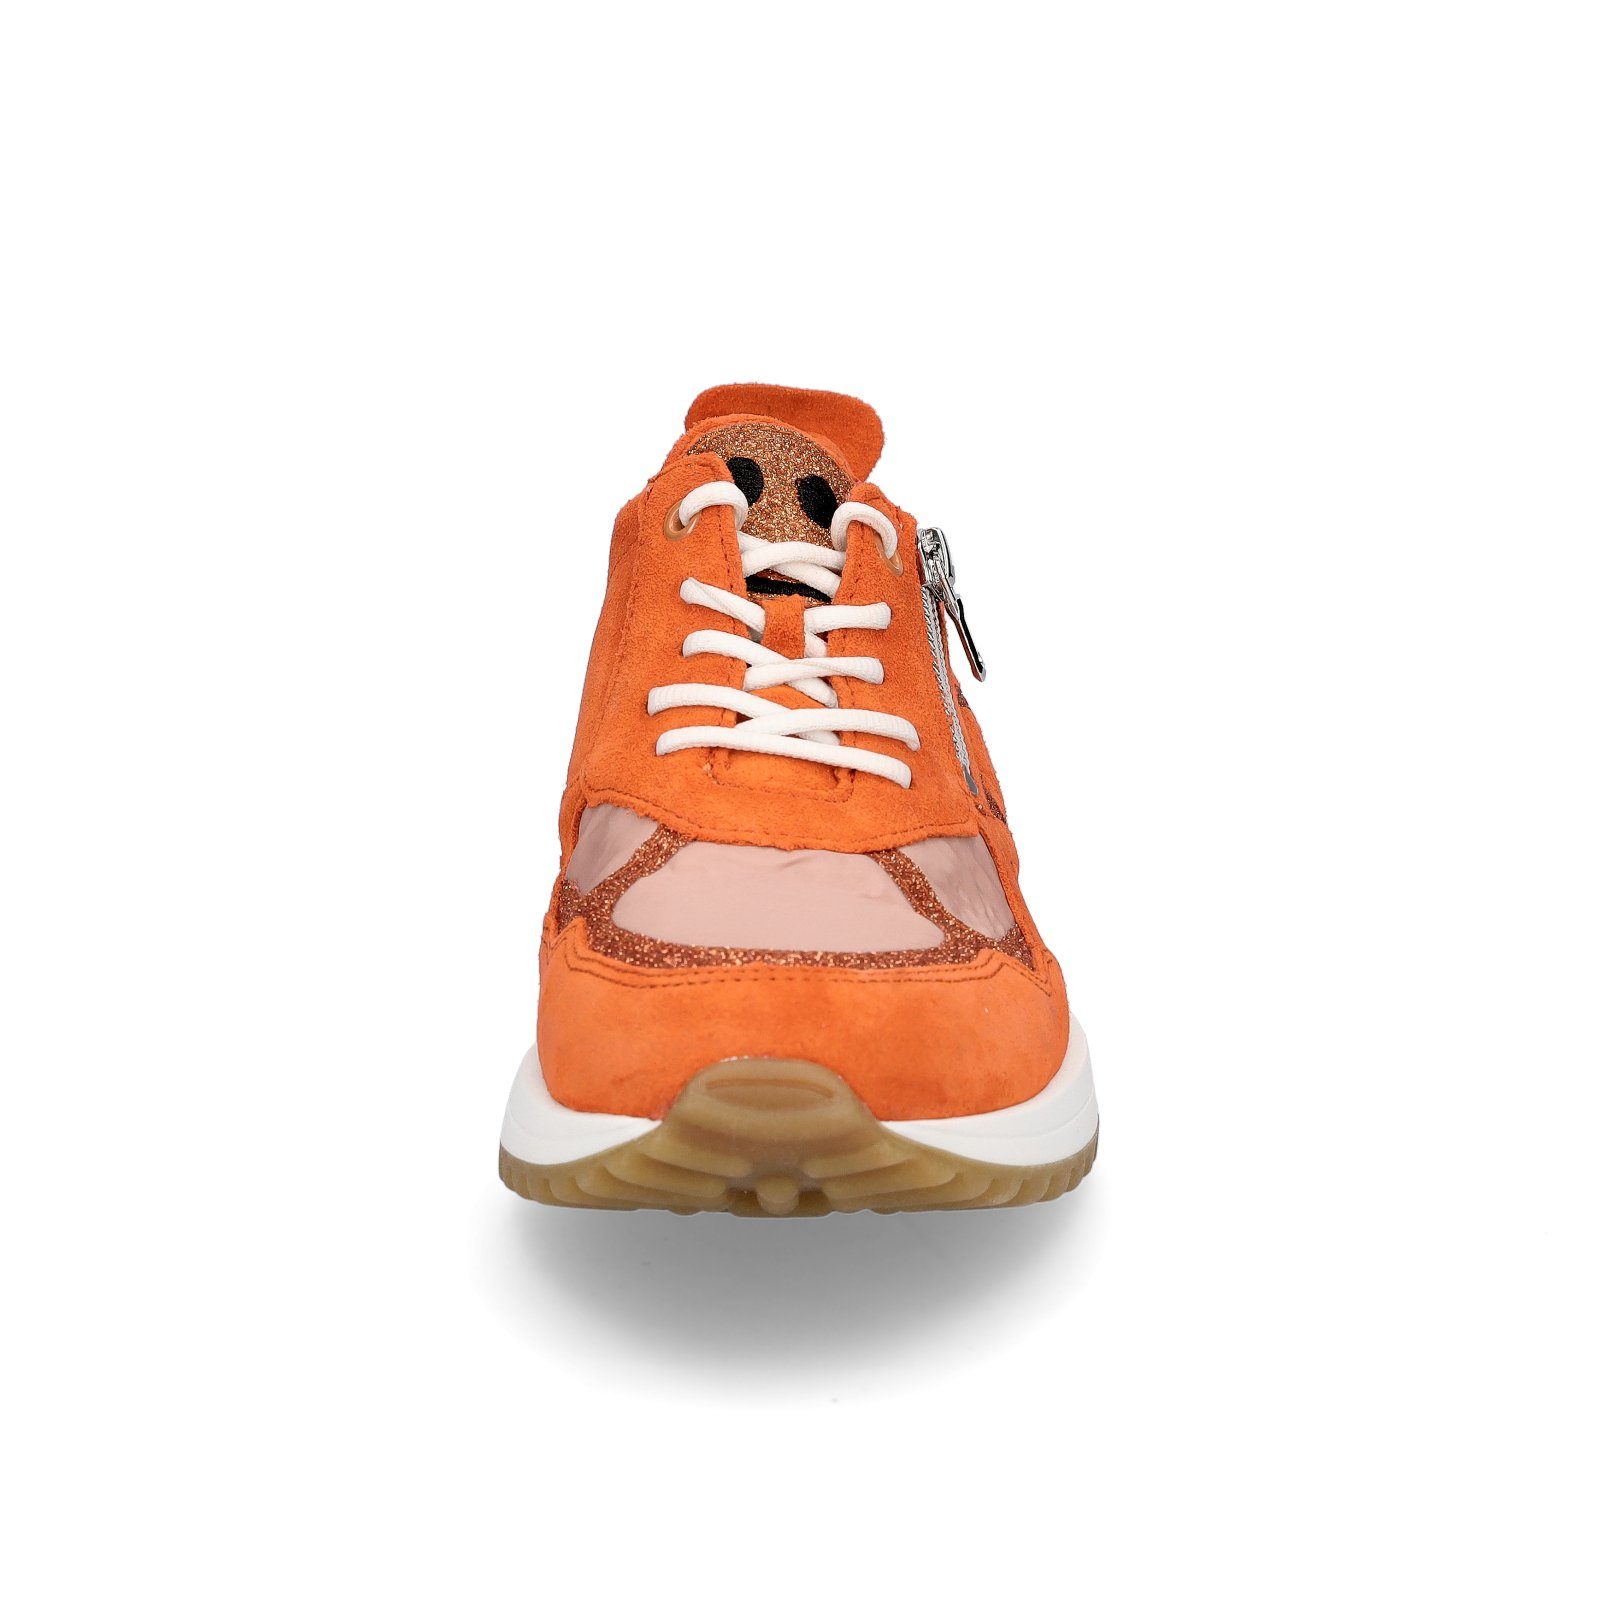 Waldläufer Waldläufer orange Damen Sneaker apricot Sneaker